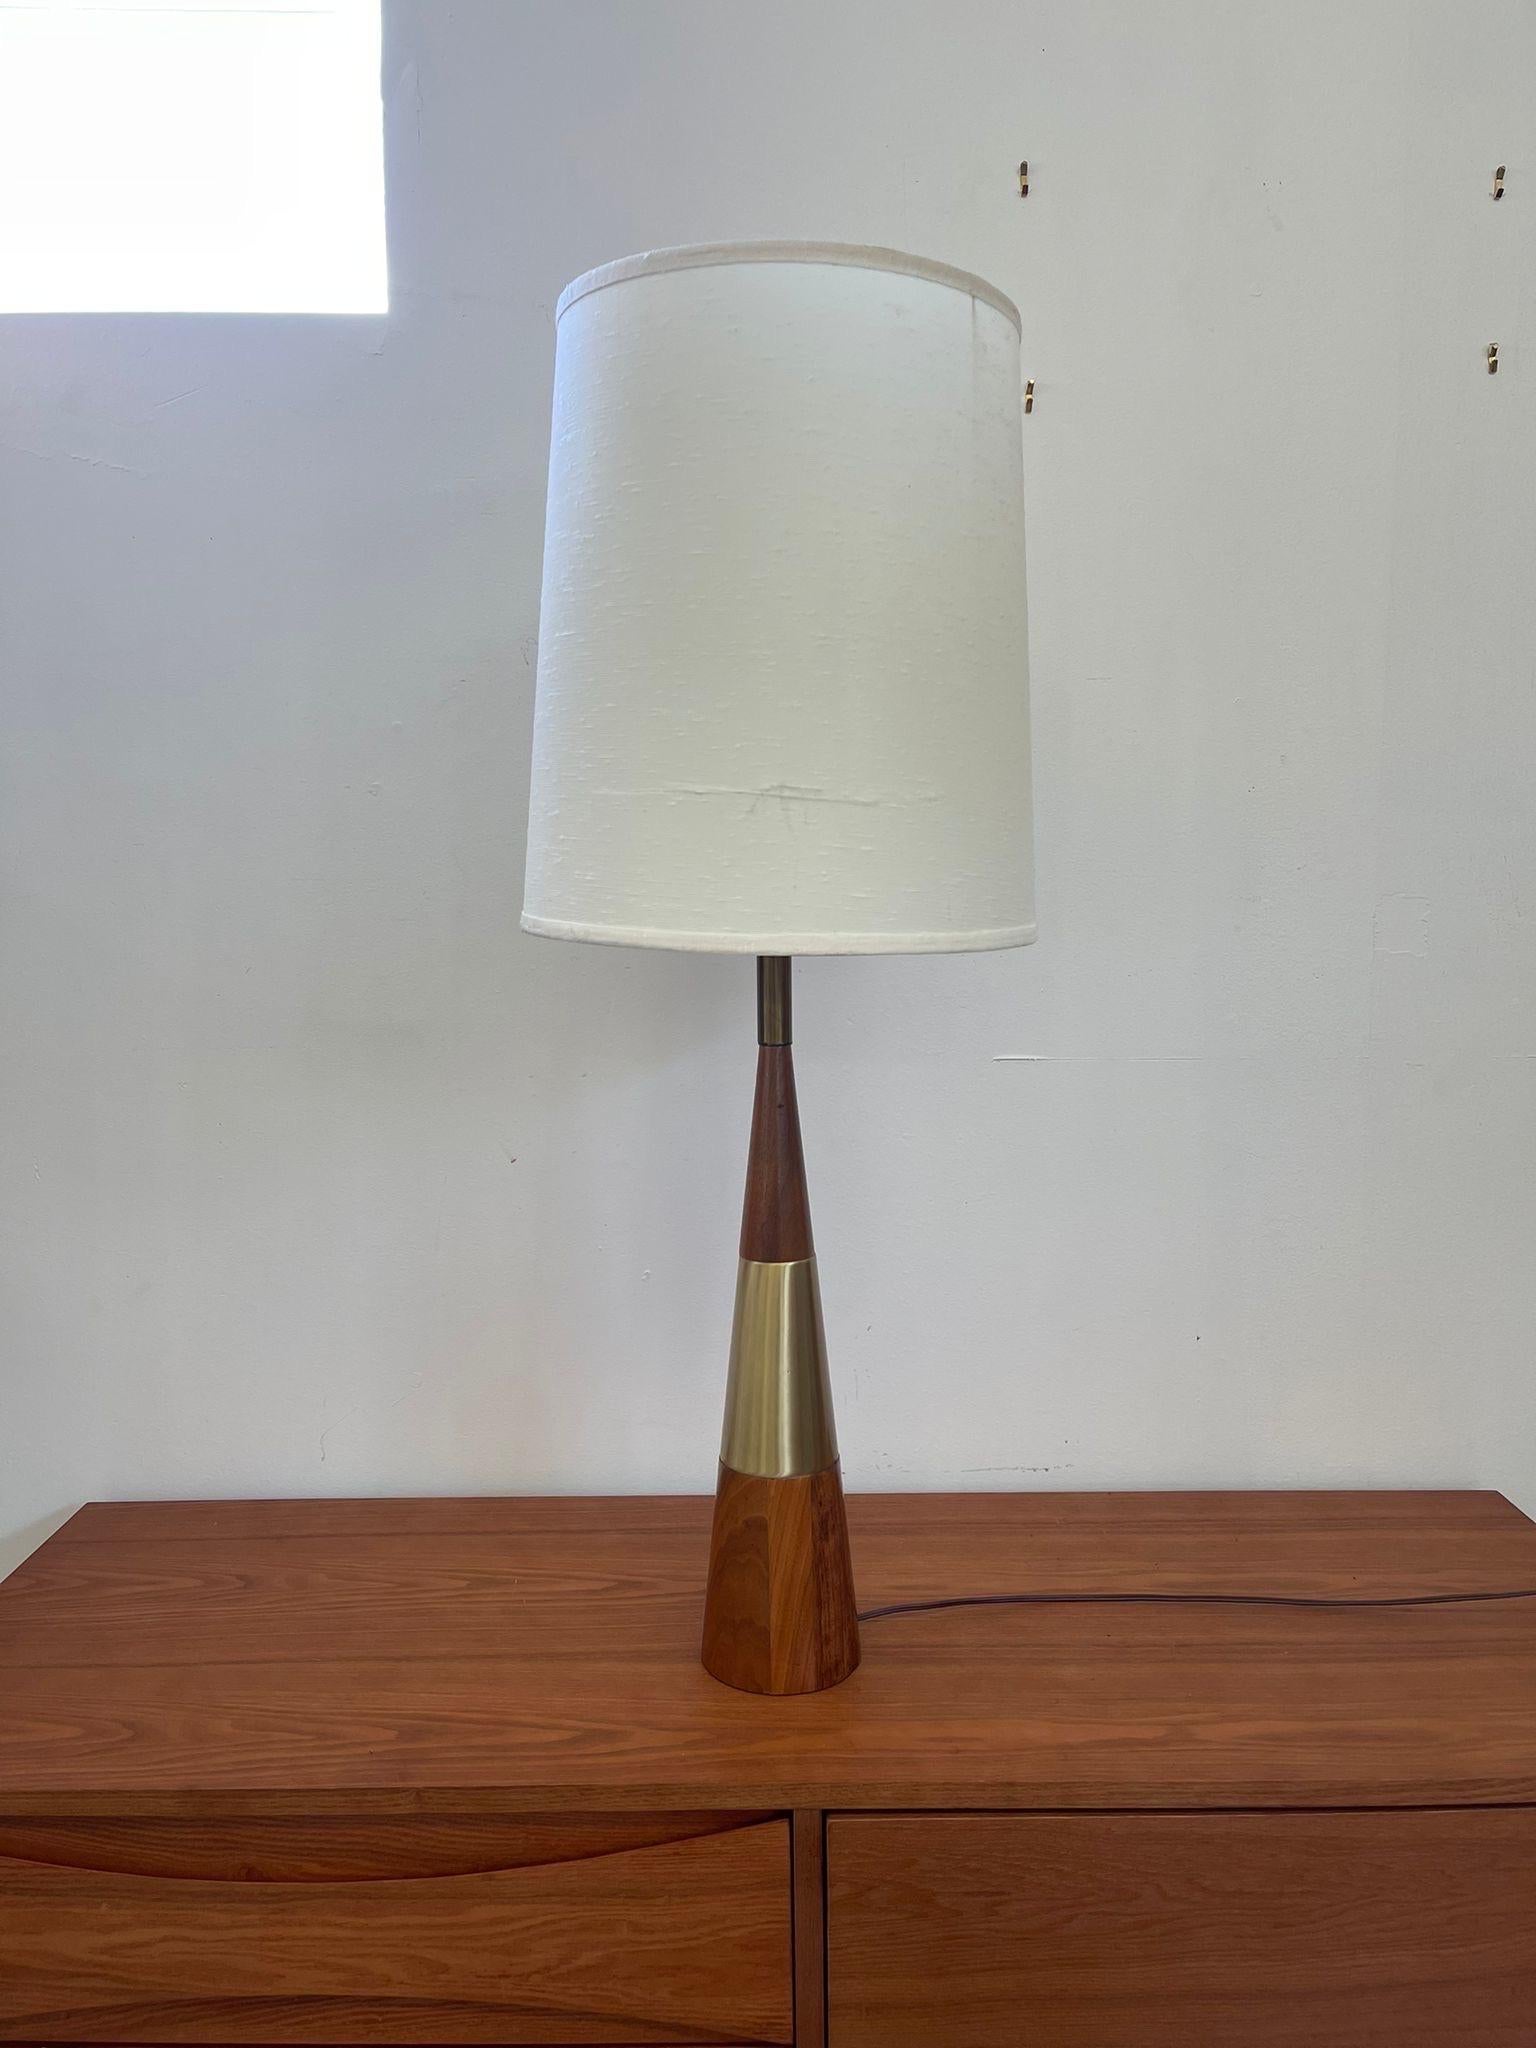 Voll funktionsfähige große Vintage-Lampe in Kegelform. Basis der Lampe hat Messing getönten Akzent und Walnuss getönten Holz. Möglicherweise 1950er Jahre. Vintage Condition Konsistent mit dem Alter wie abgebildet. Glühbirne nicht